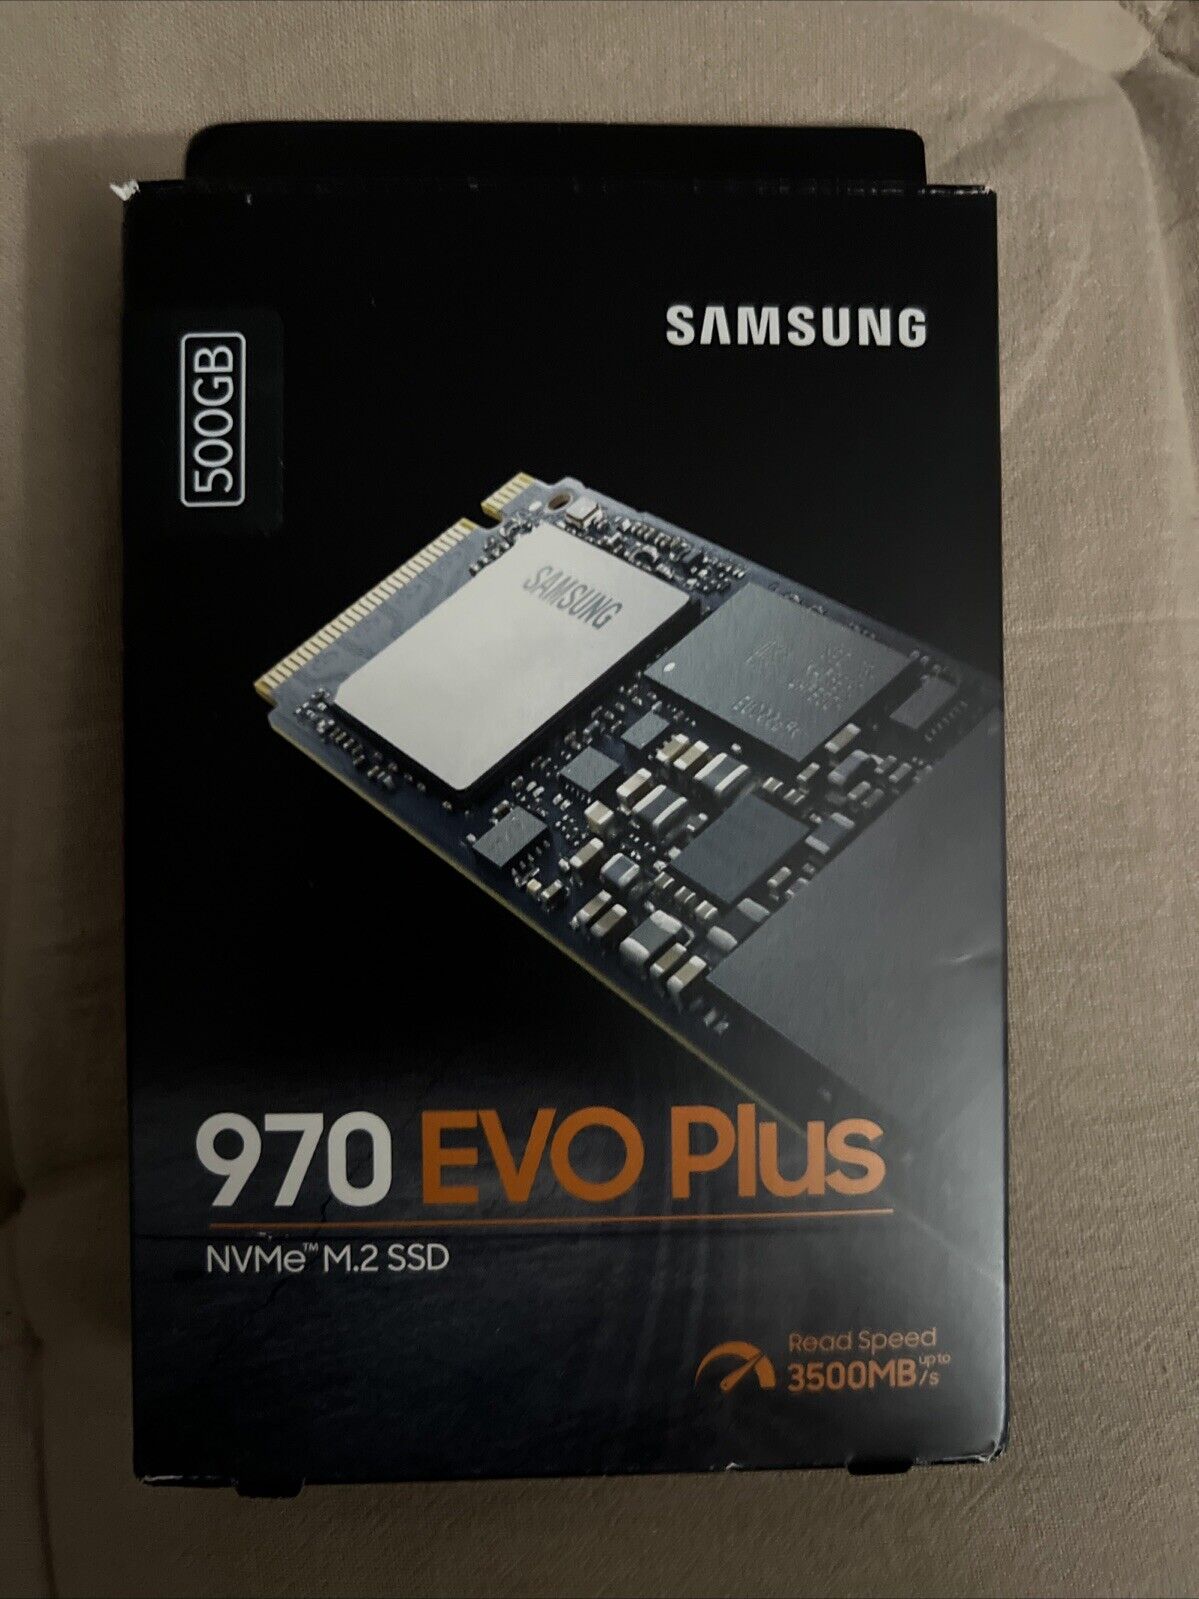 Samsung 970 EVO Plus NVMe M.2 500 GB Internal SSD (MZ-V7S500B/AM)